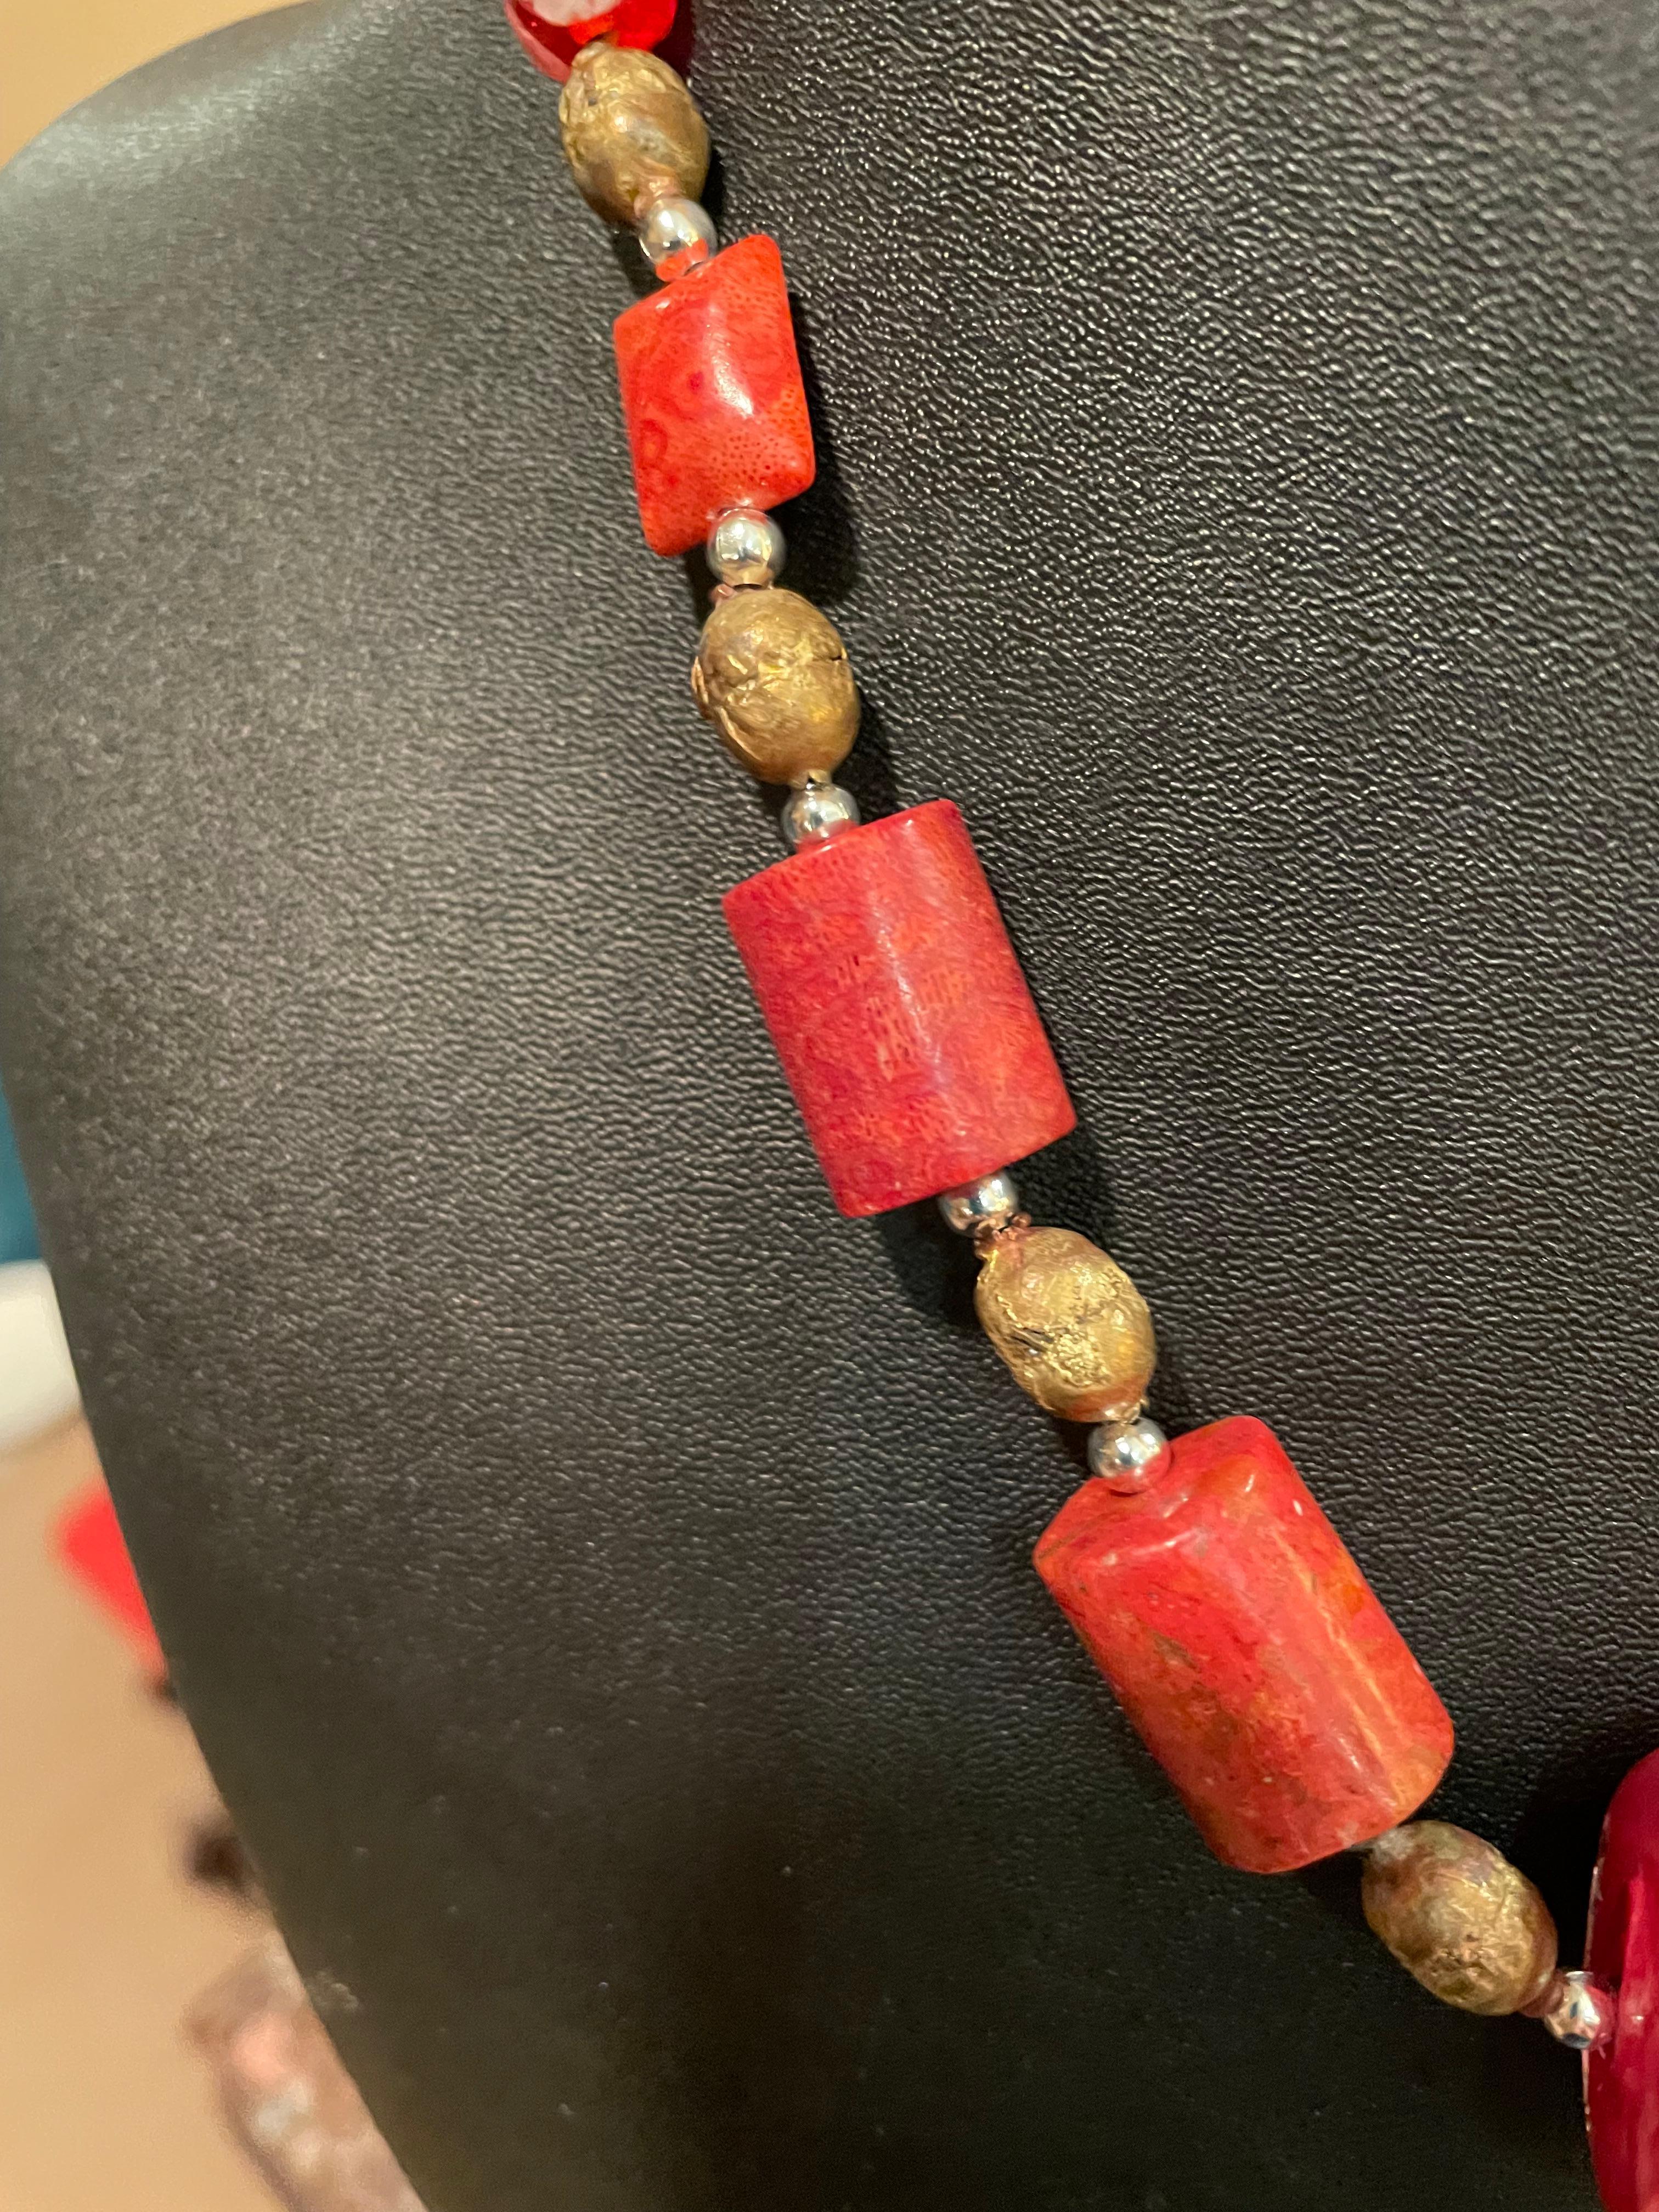 Lorrain's Bijoux bietet ein handgefertigtes, einzigartiges Collier aus venezianischen Perlen und chinesischen Korallen. Die zentrale venezianische Perle wurde in Murano handgefertigt und enthält sowohl Silber- als auch Goldteile, die in das Glas